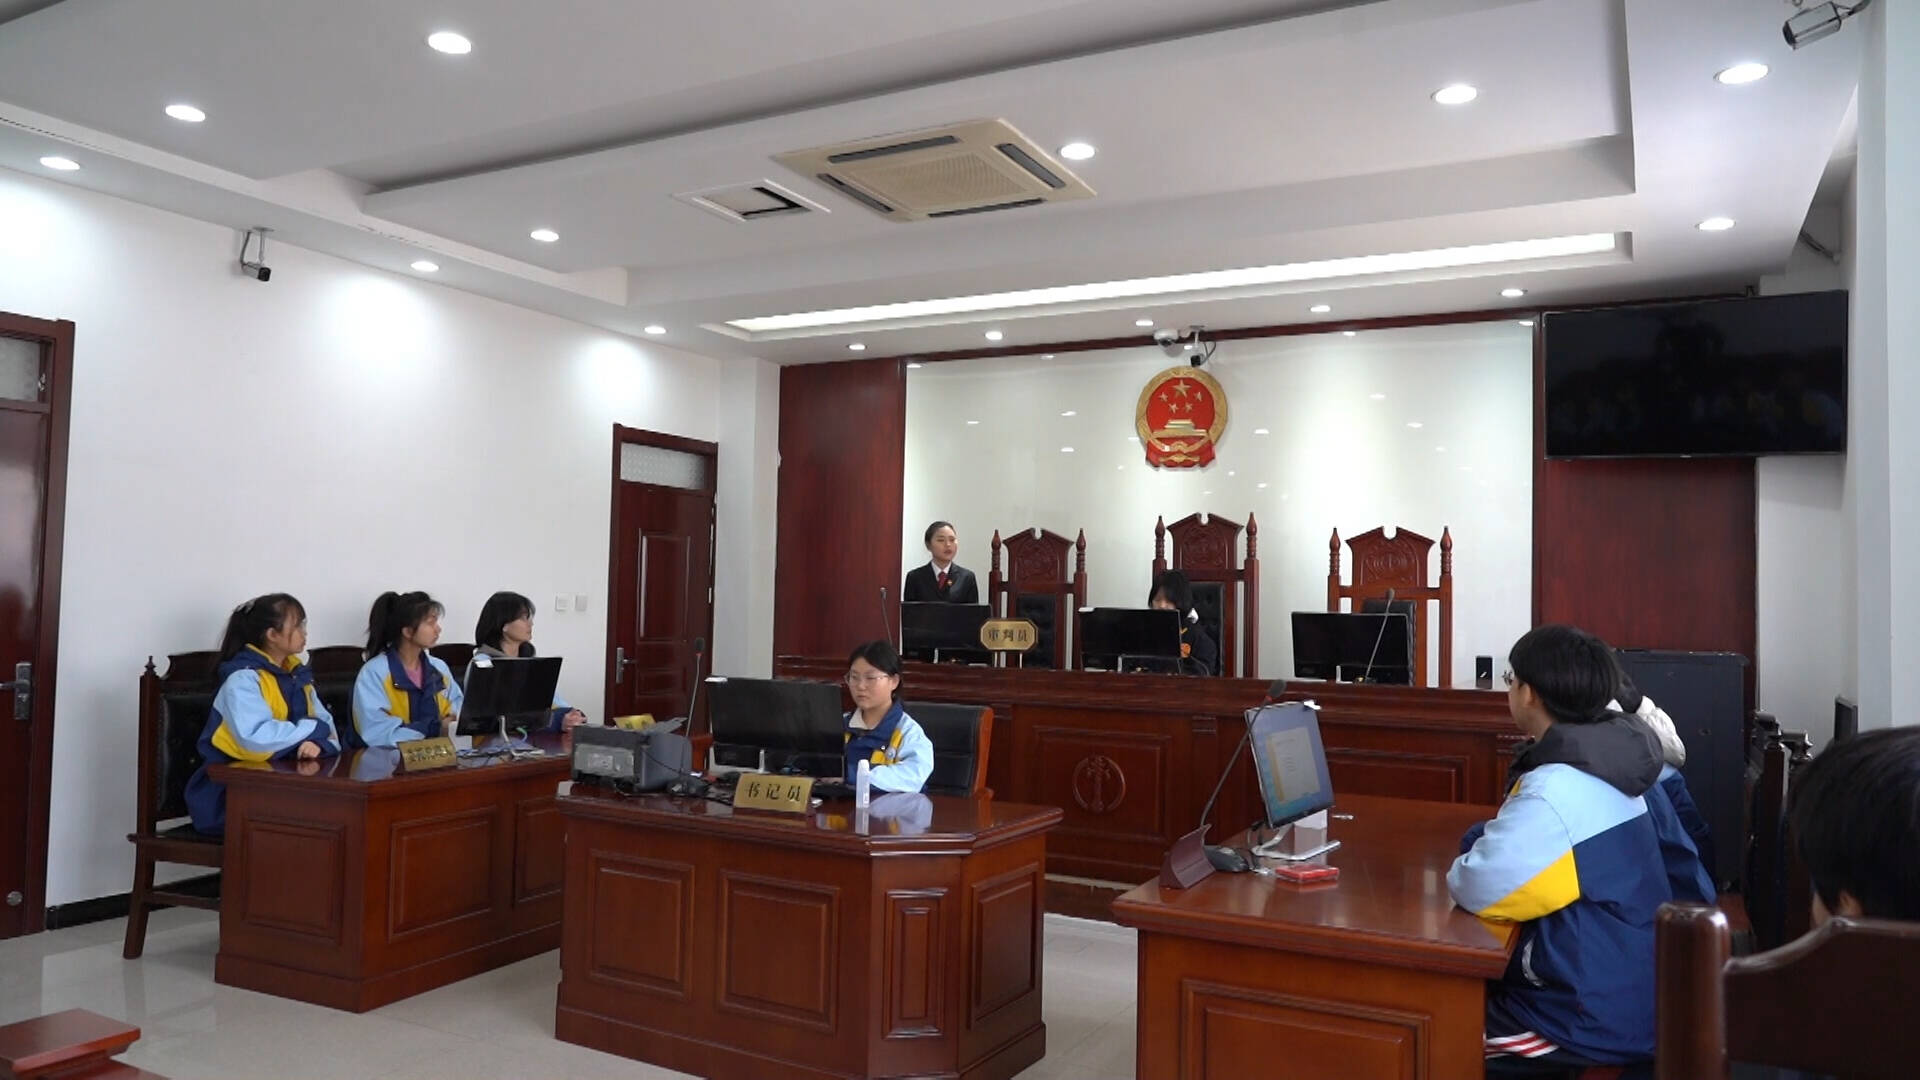 体验式普法教育 枣庄薛城将课堂“搬进”法庭